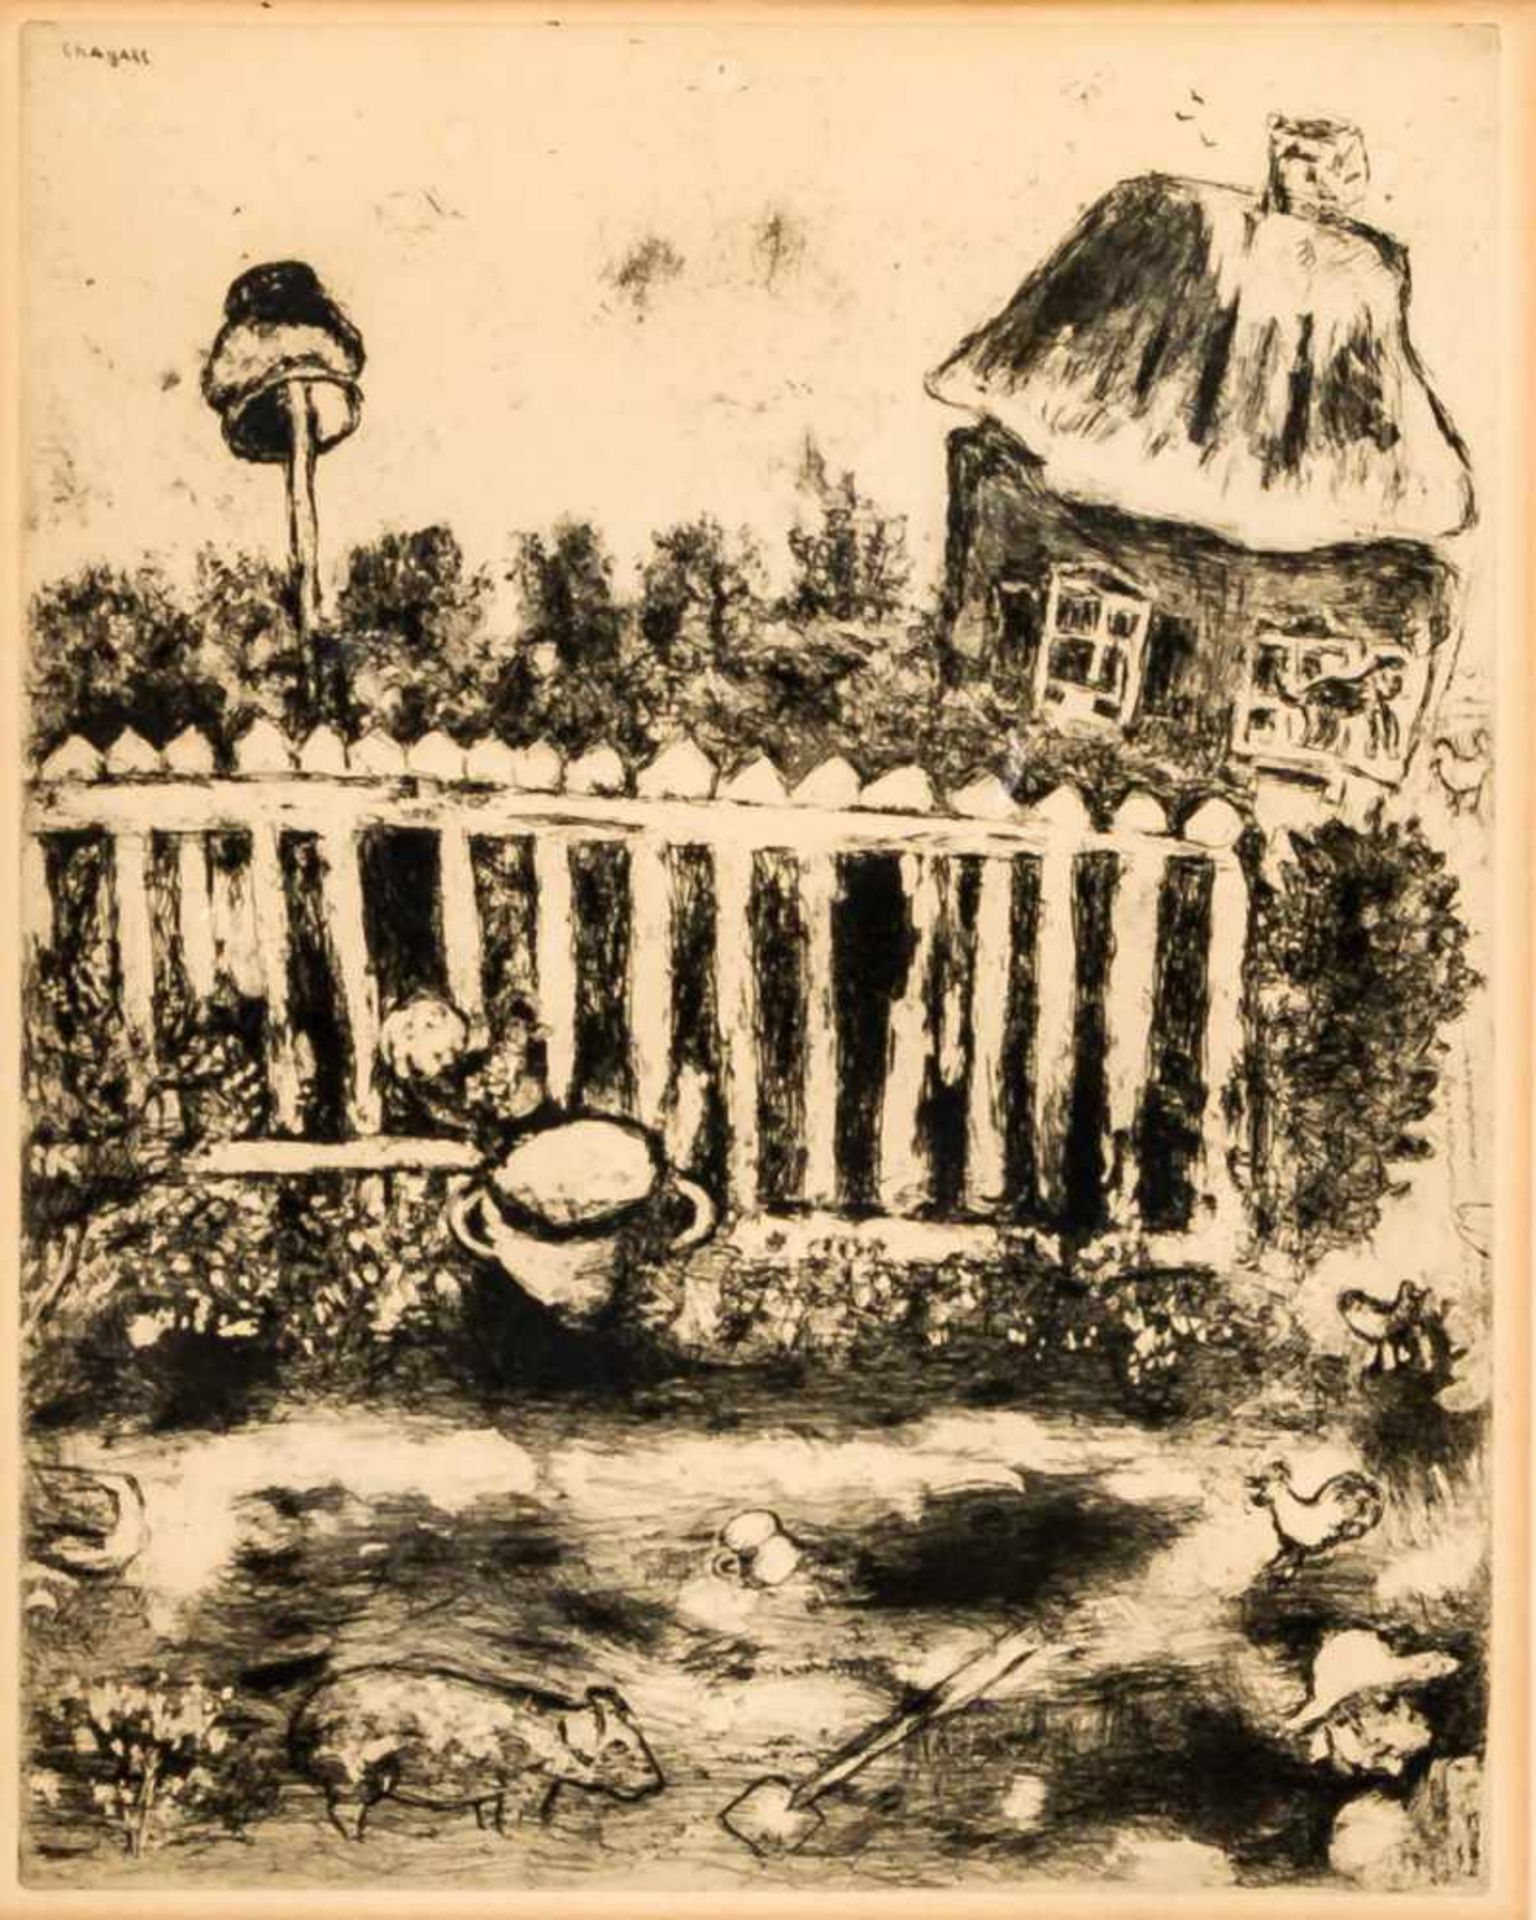 Marc Chagall (1887 - 1985) Le Pot de Terre et le Pot de Fer Radierung, 1927 - 1930 30 x 23,5 cm